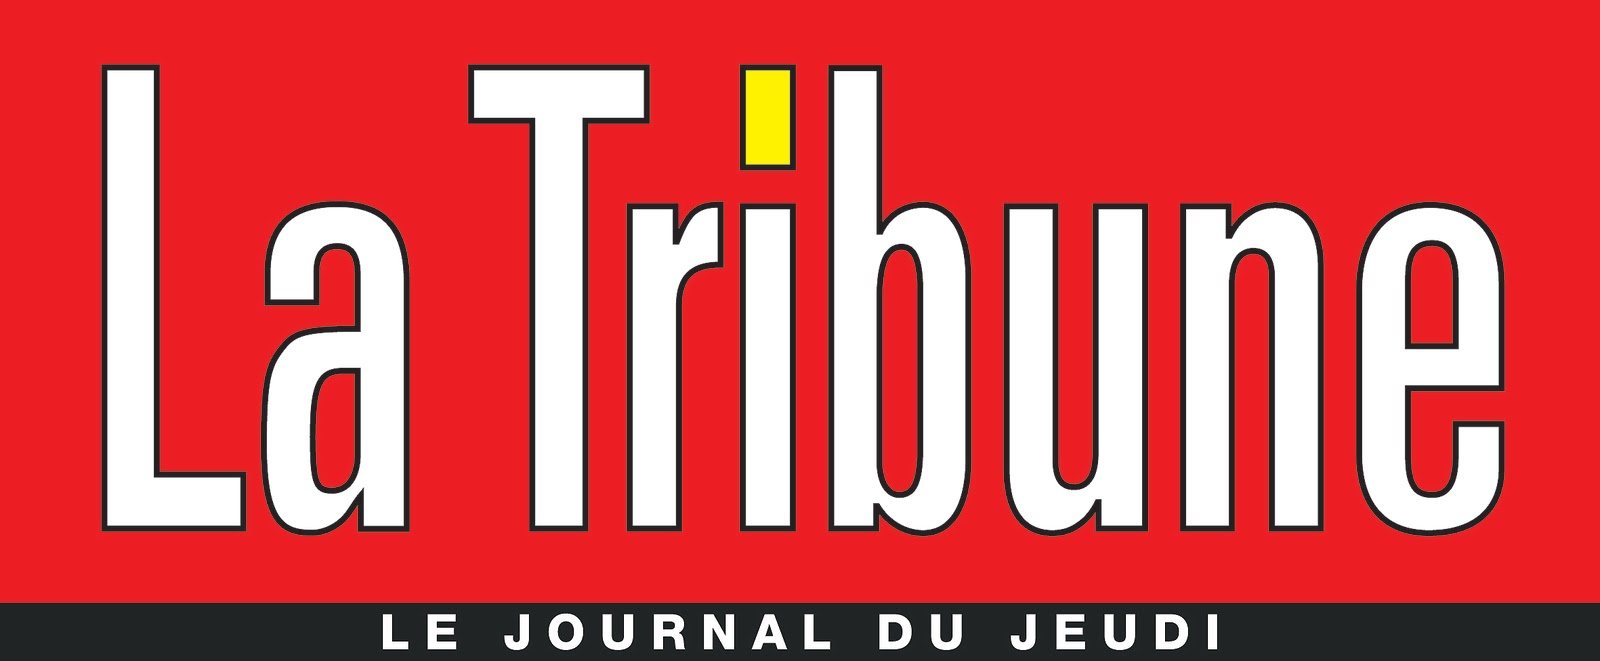 logo_La_Tribune_Edilivre